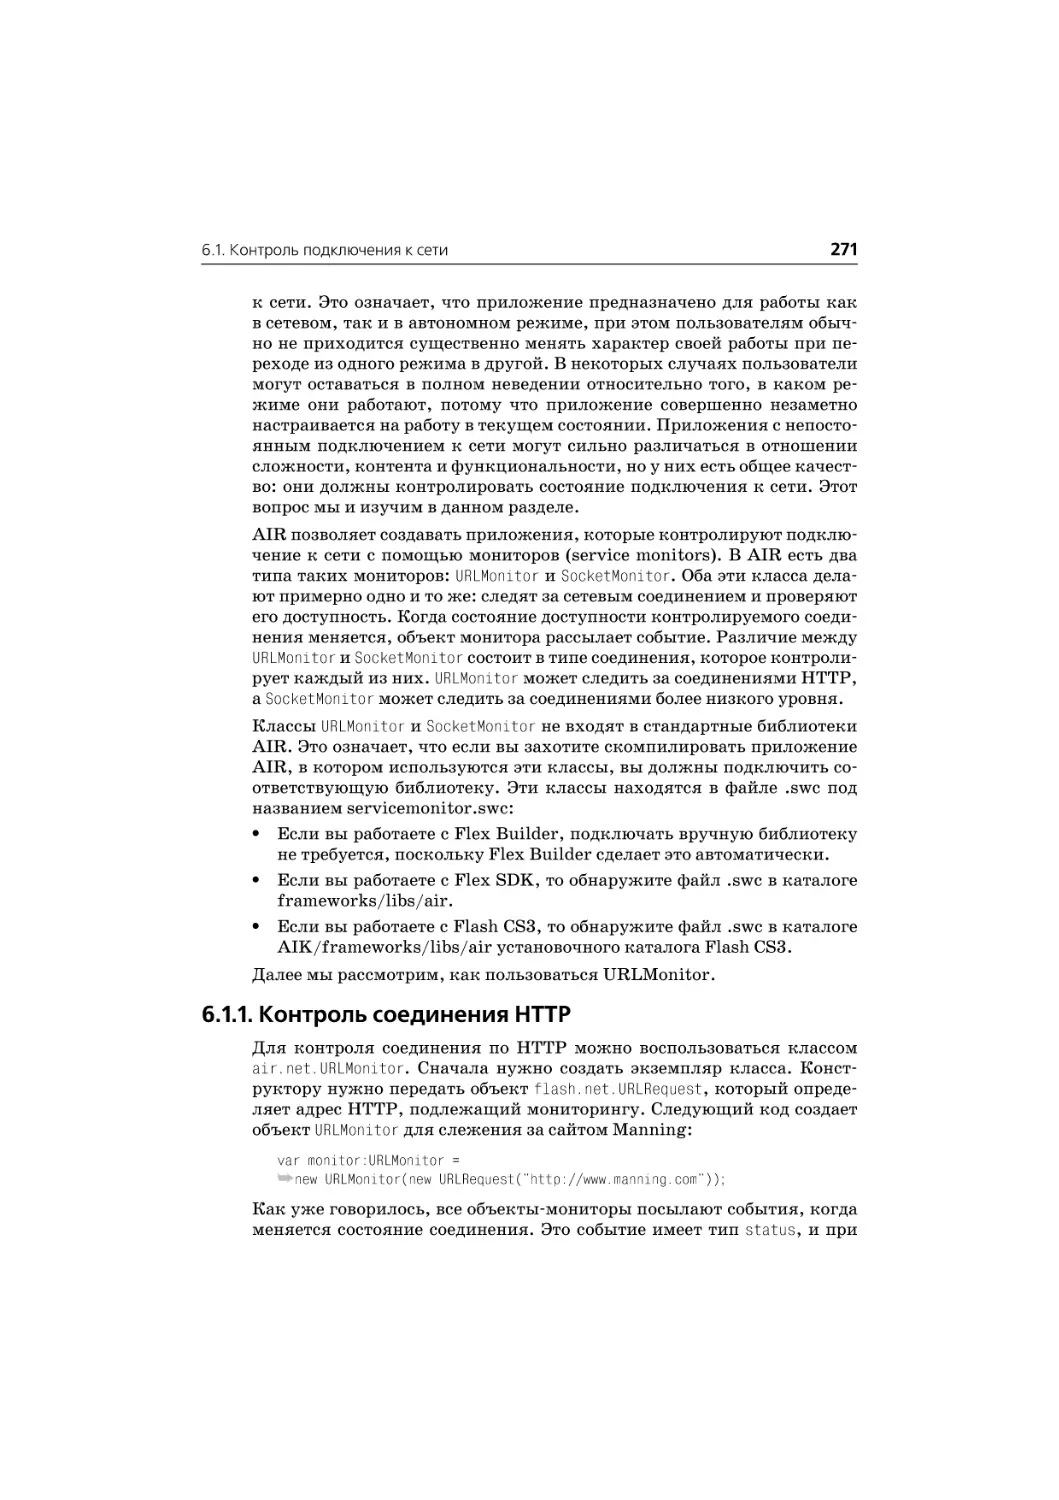 6.1.1. Контроль соединения HTTP